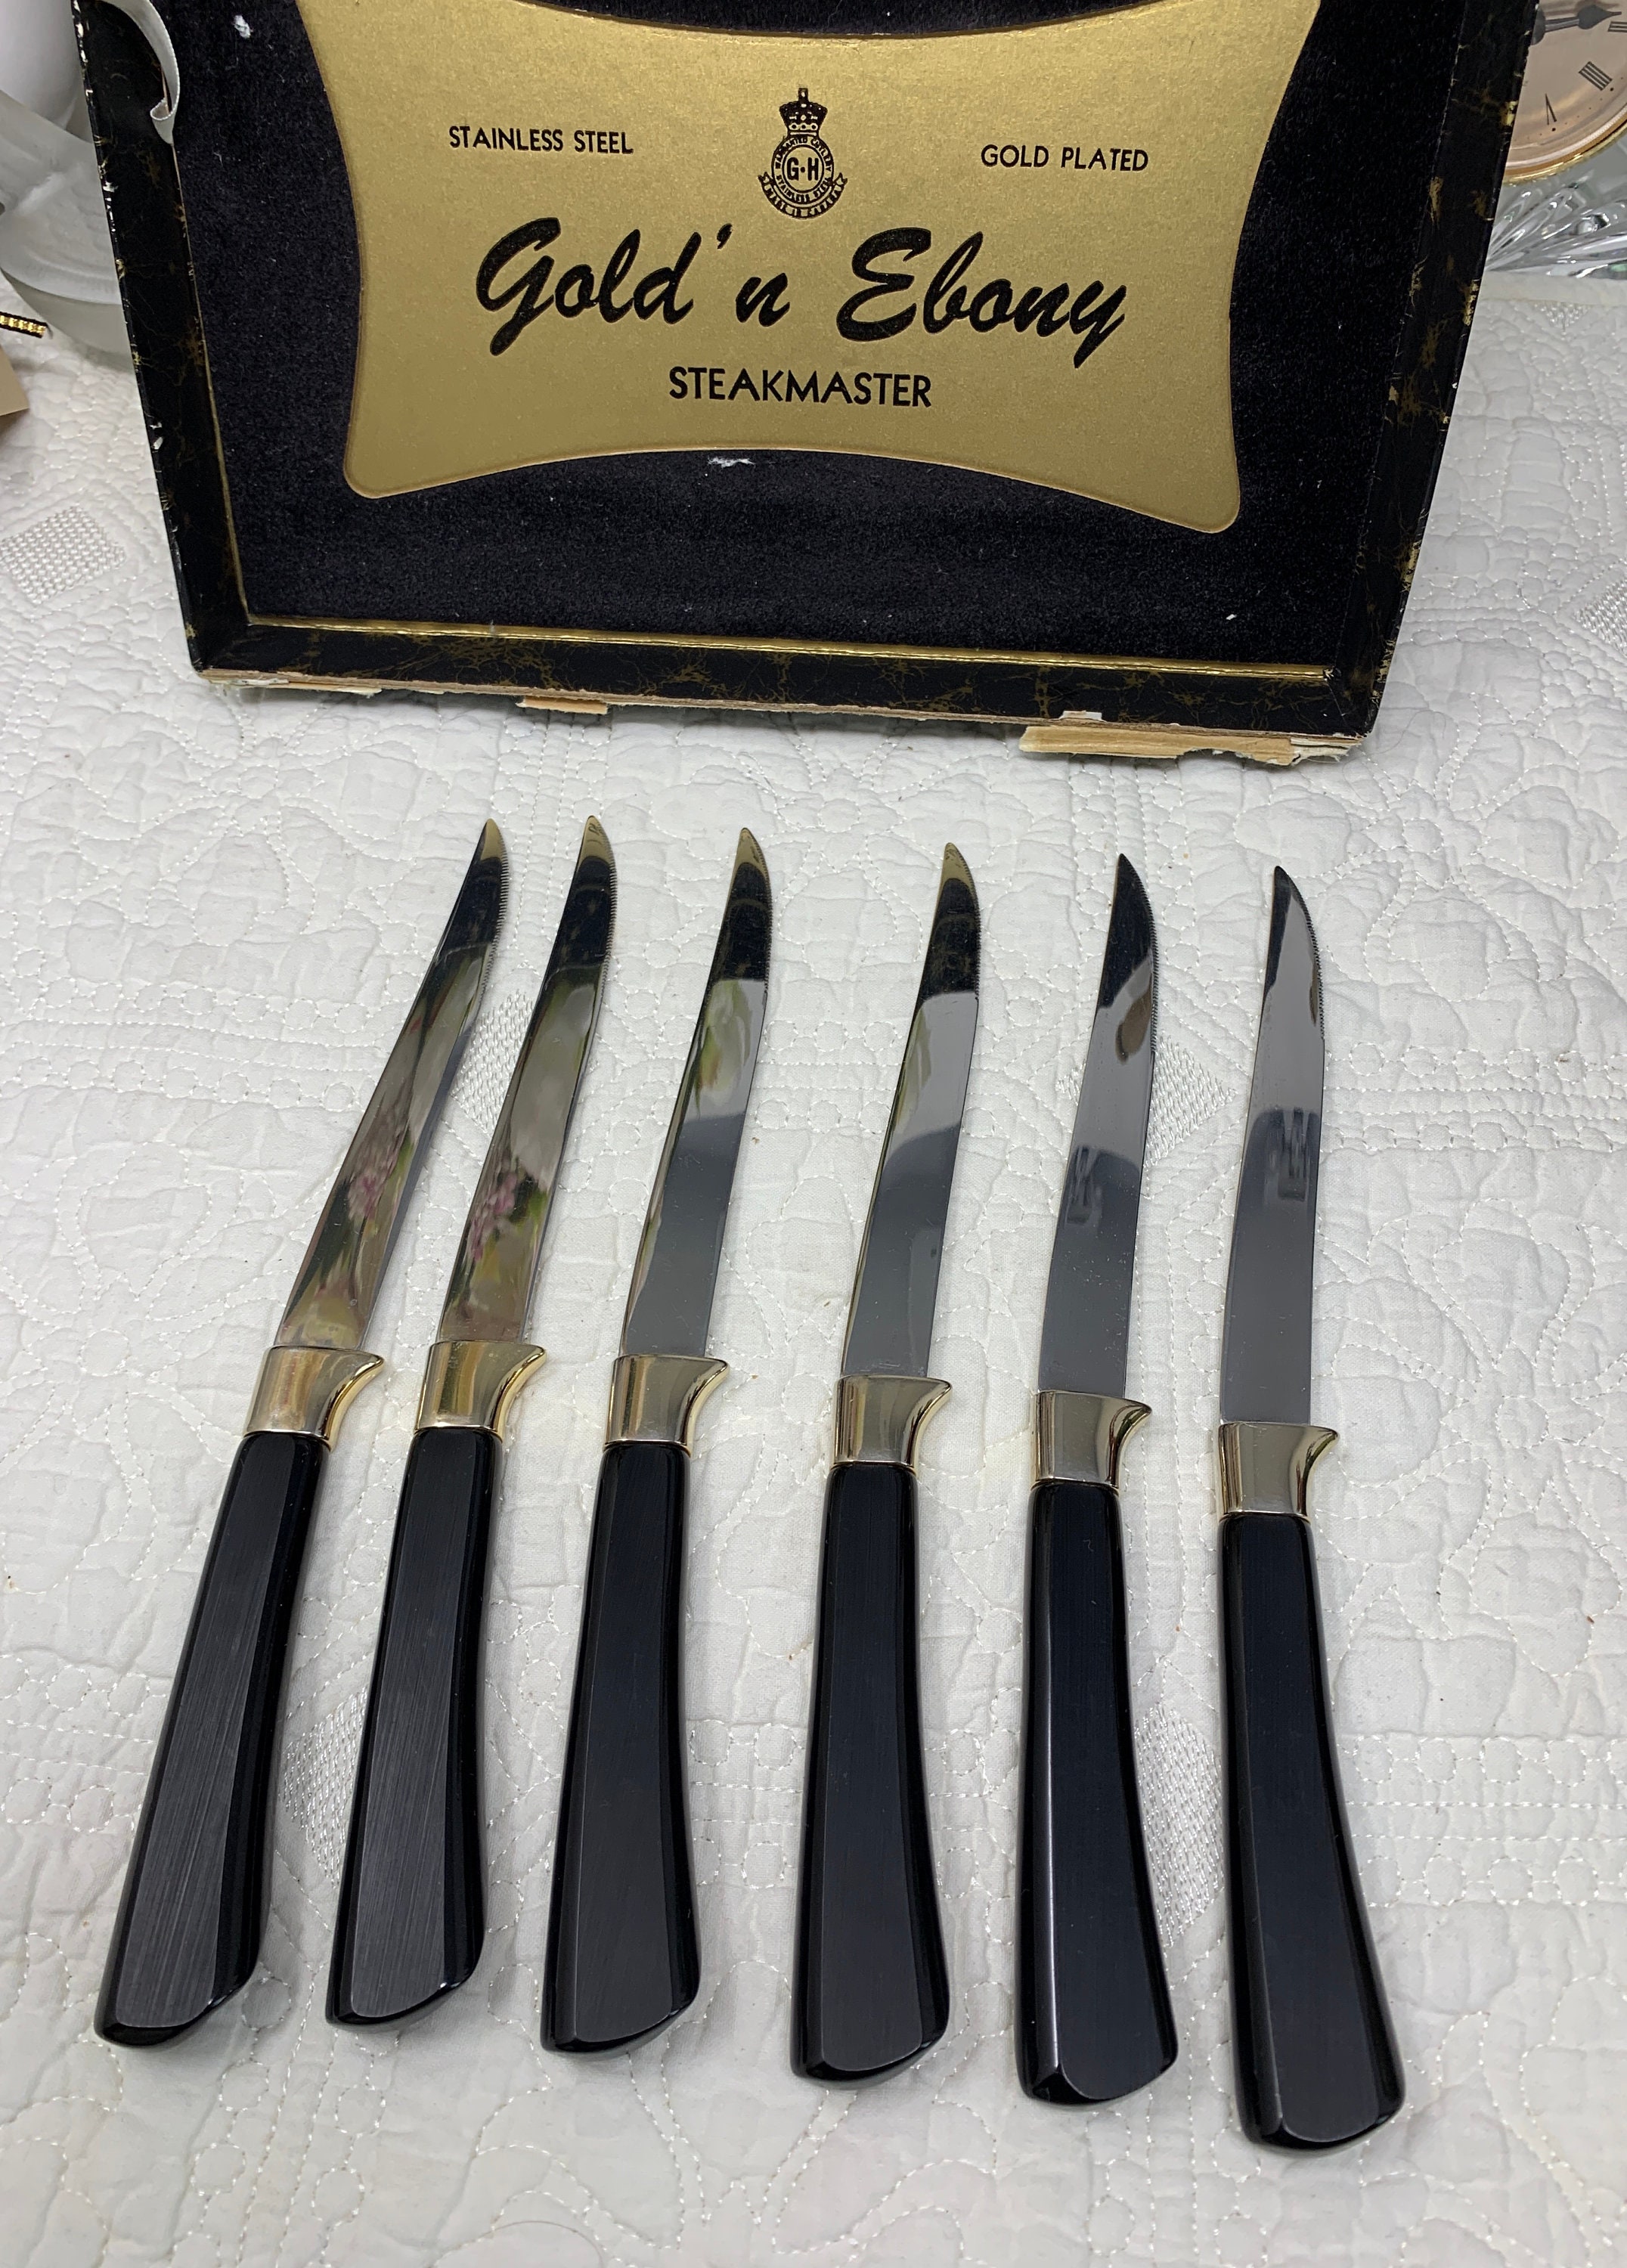 Reanea Gold Steak Knives Set, Serrated Knife, Stainless Steel Sharp Dinner Knife, Size: 9.92 x 1.54 x 0.91